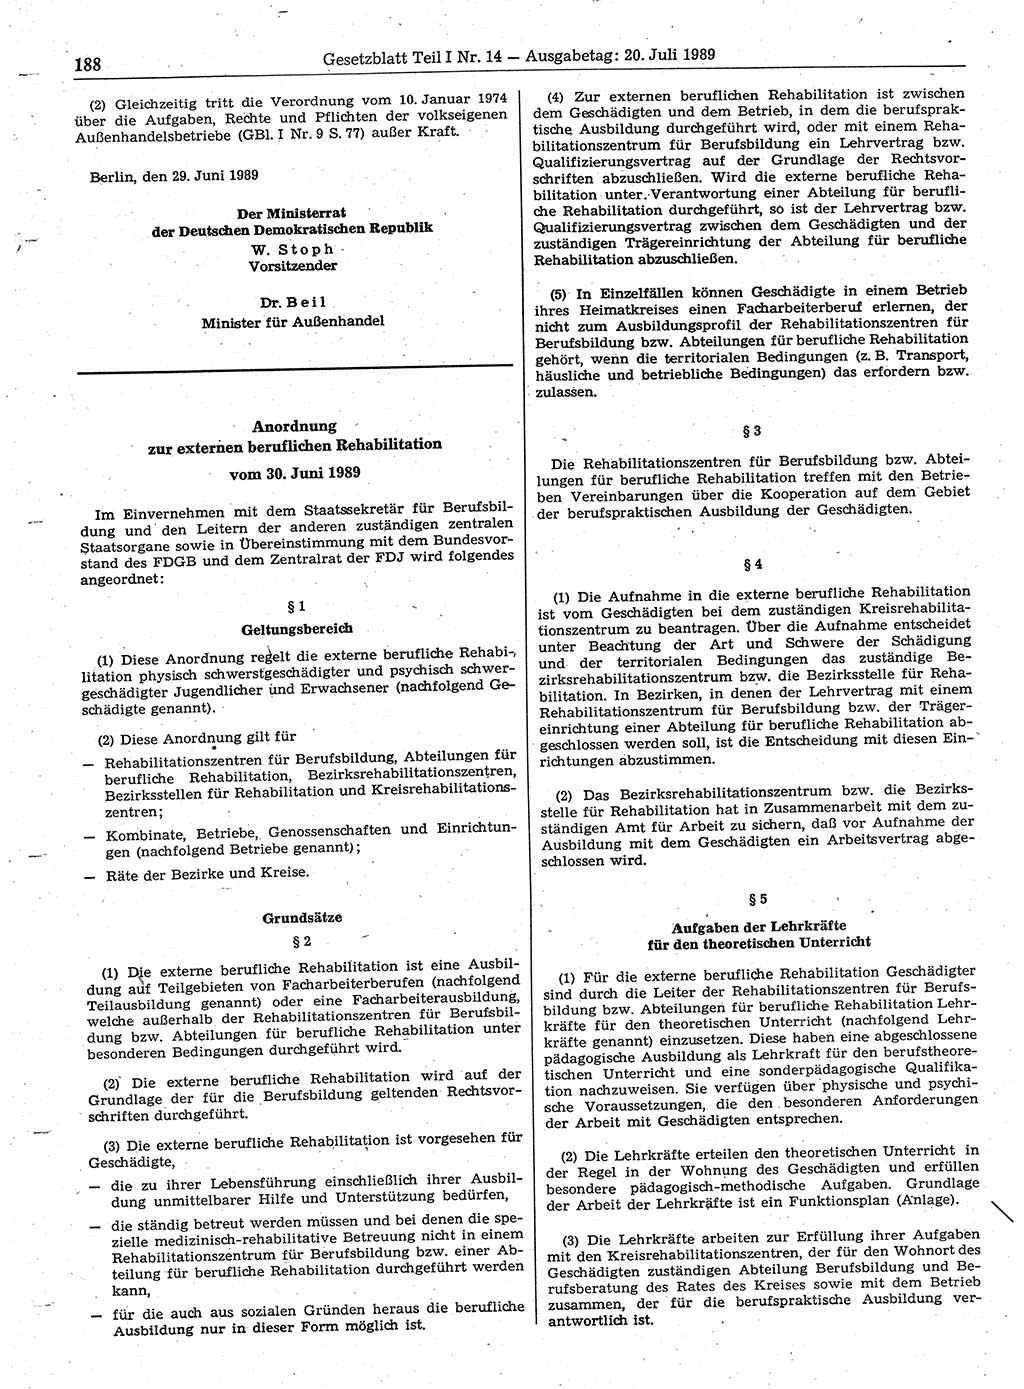 Gesetzblatt (GBl.) der Deutschen Demokratischen Republik (DDR) Teil Ⅰ 1989, Seite 188 (GBl. DDR Ⅰ 1989, S. 188)